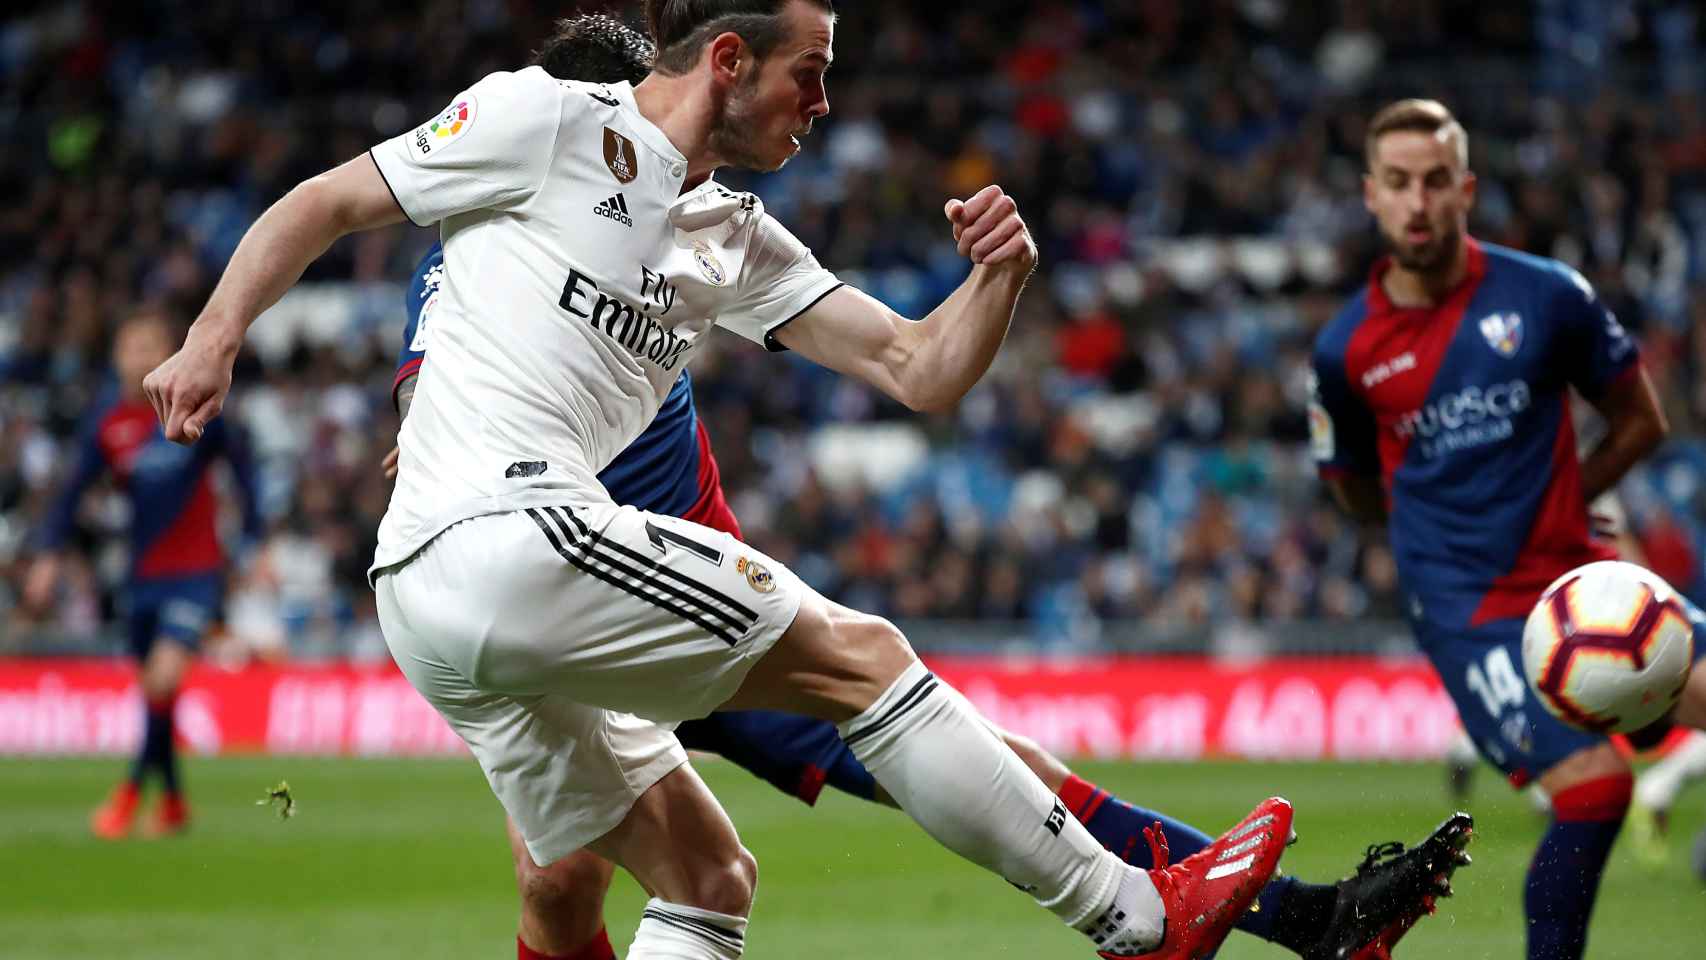 Gareth Bale centra al área frente a un jugador del Huesca